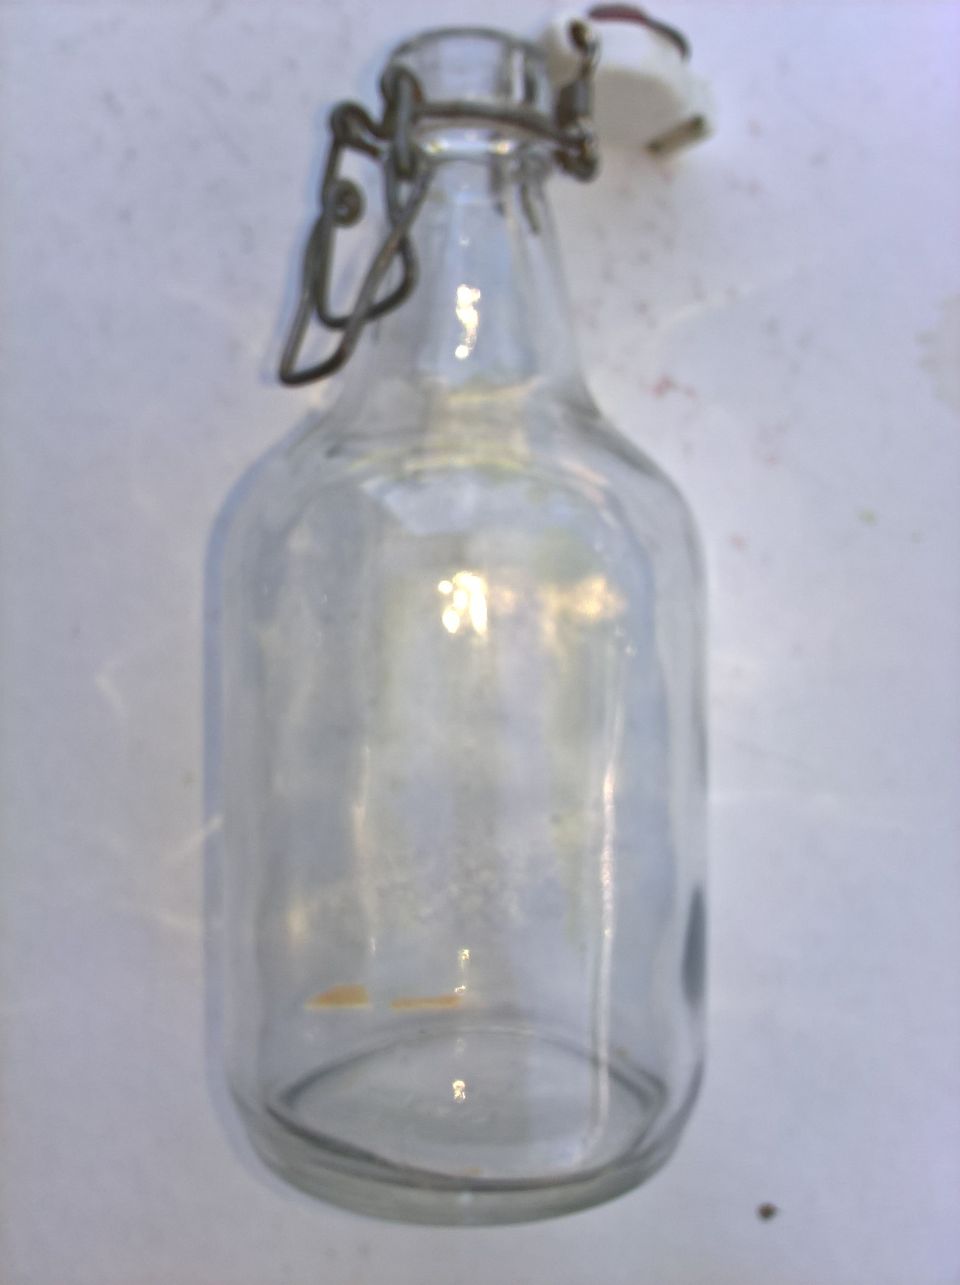 Keraamisella patenttikorkilla vanha lasipullo